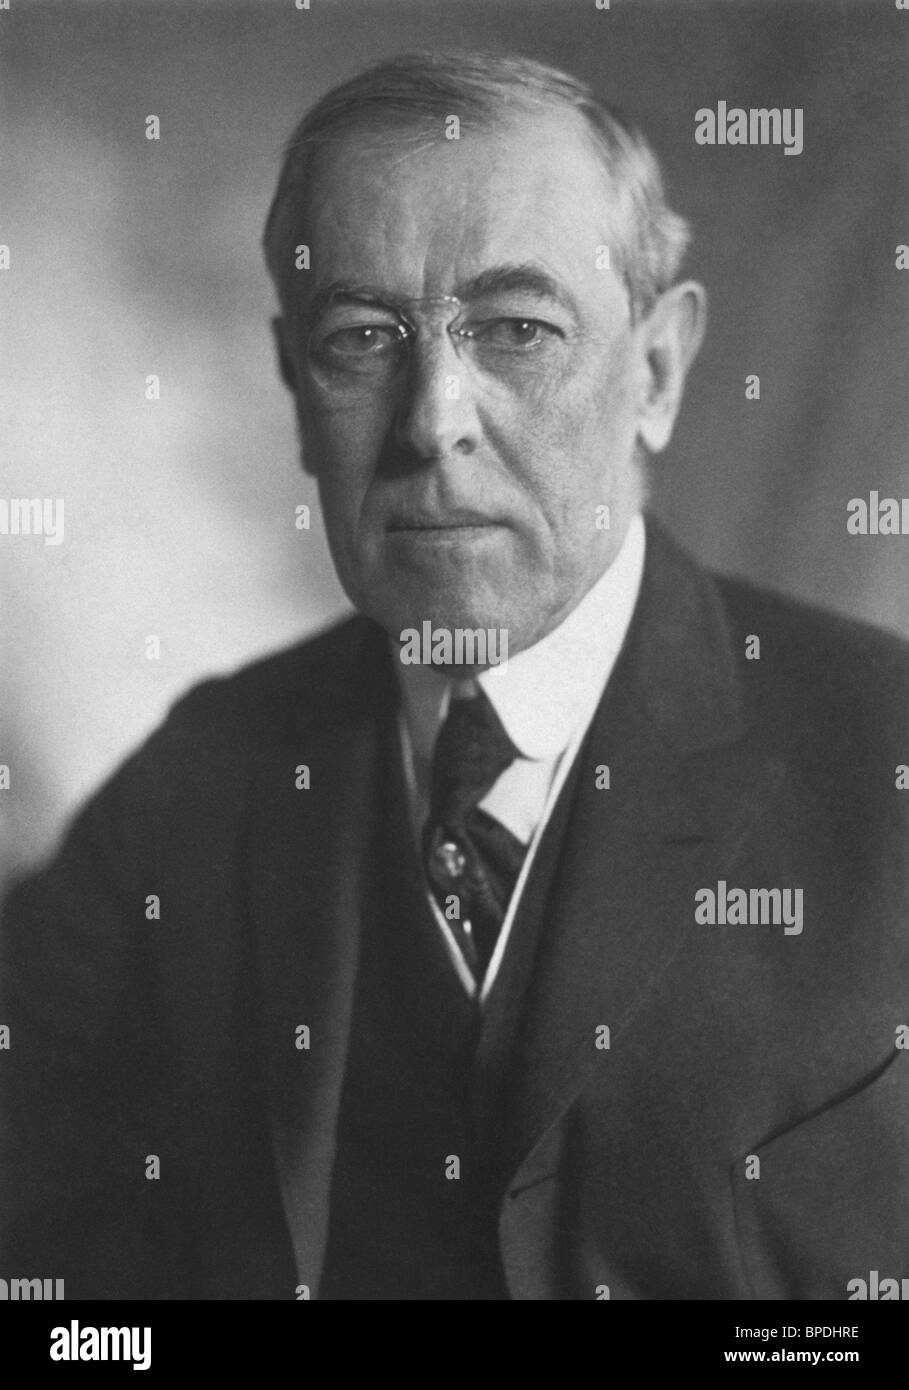 Portrait-Foto ca. 1919 von Woodrow Wilson (1856-1924) - der 28. US-Präsident (1913-1921). Stockfoto